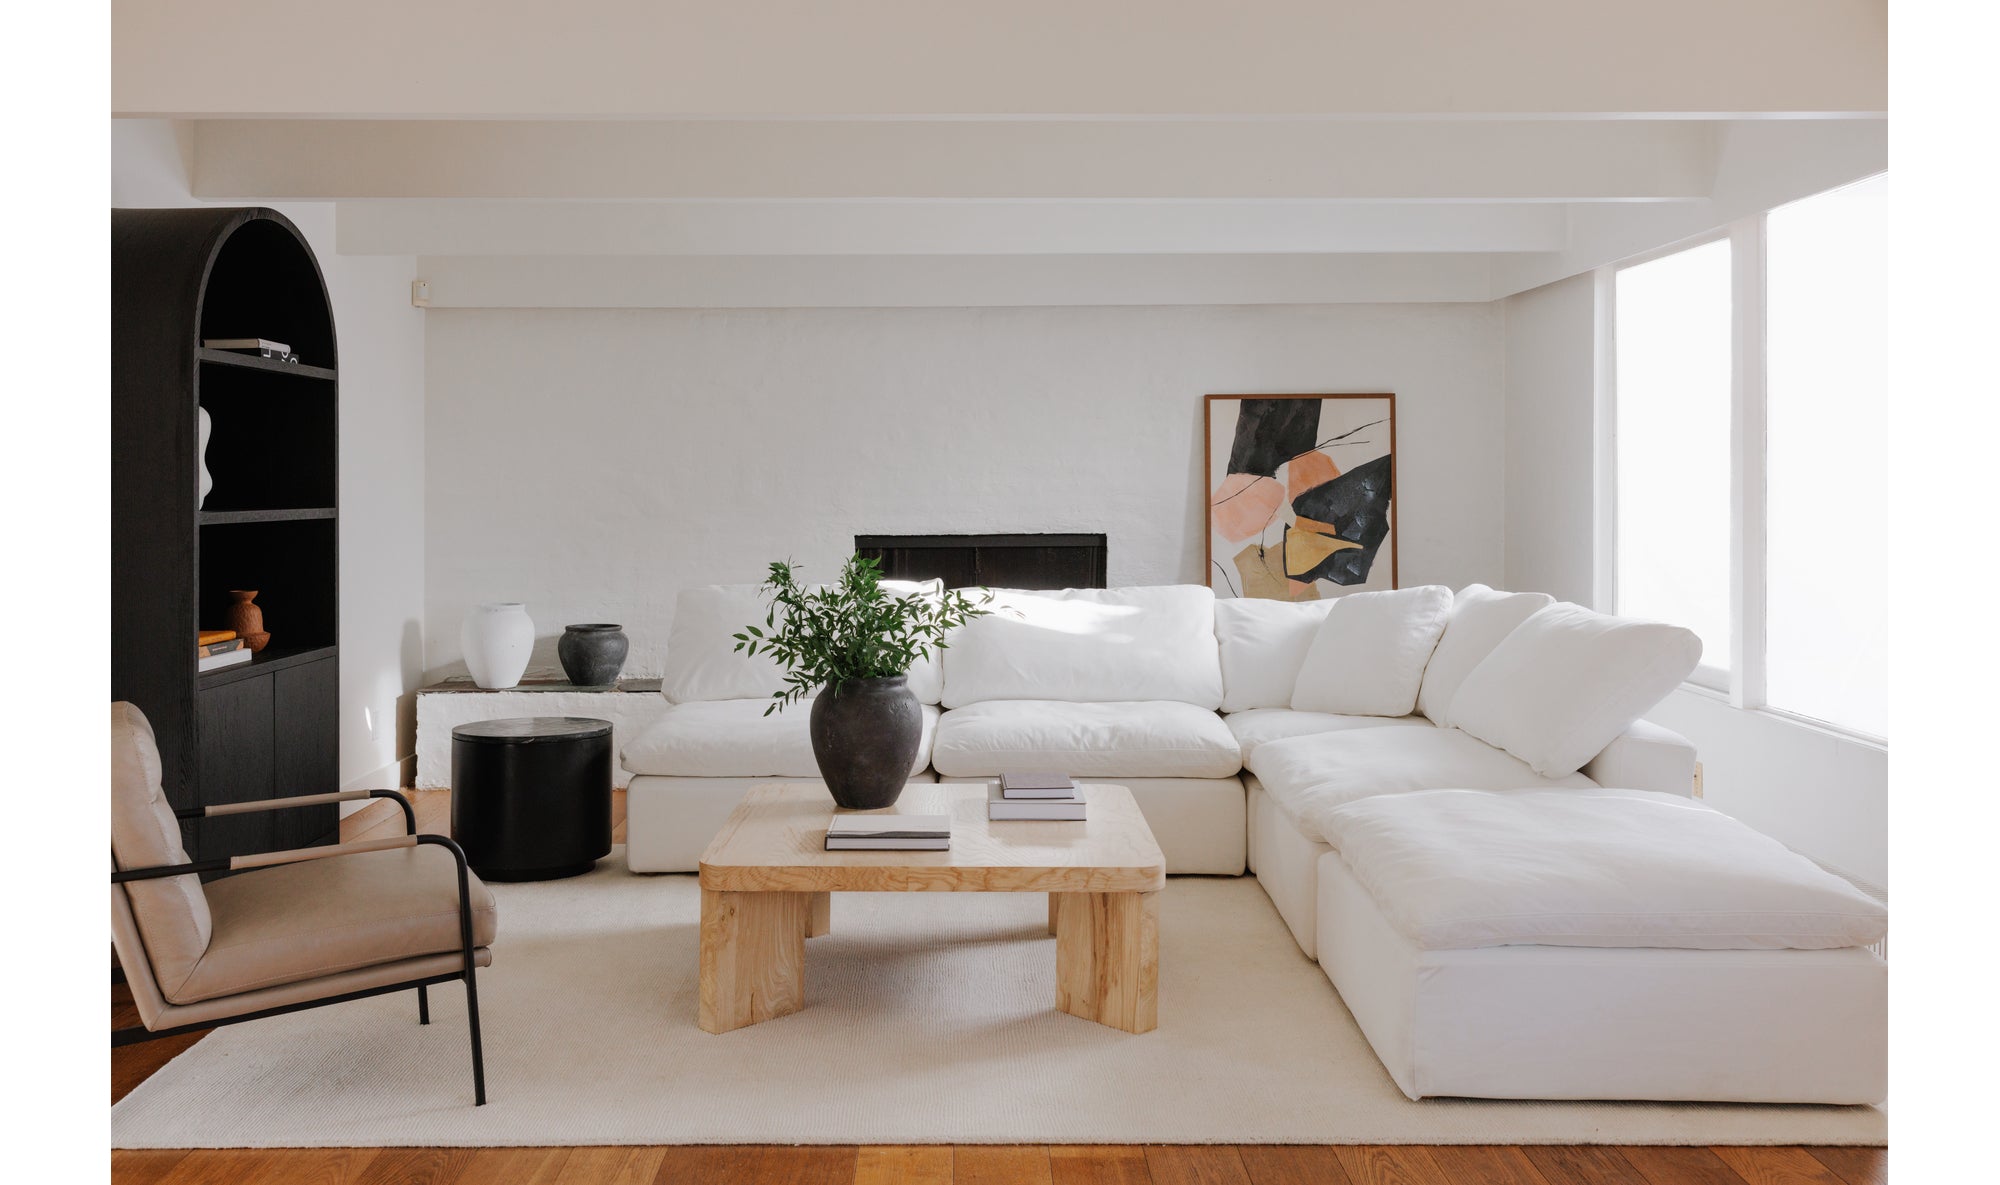 komfi-2-piece-modular-sofa-white 